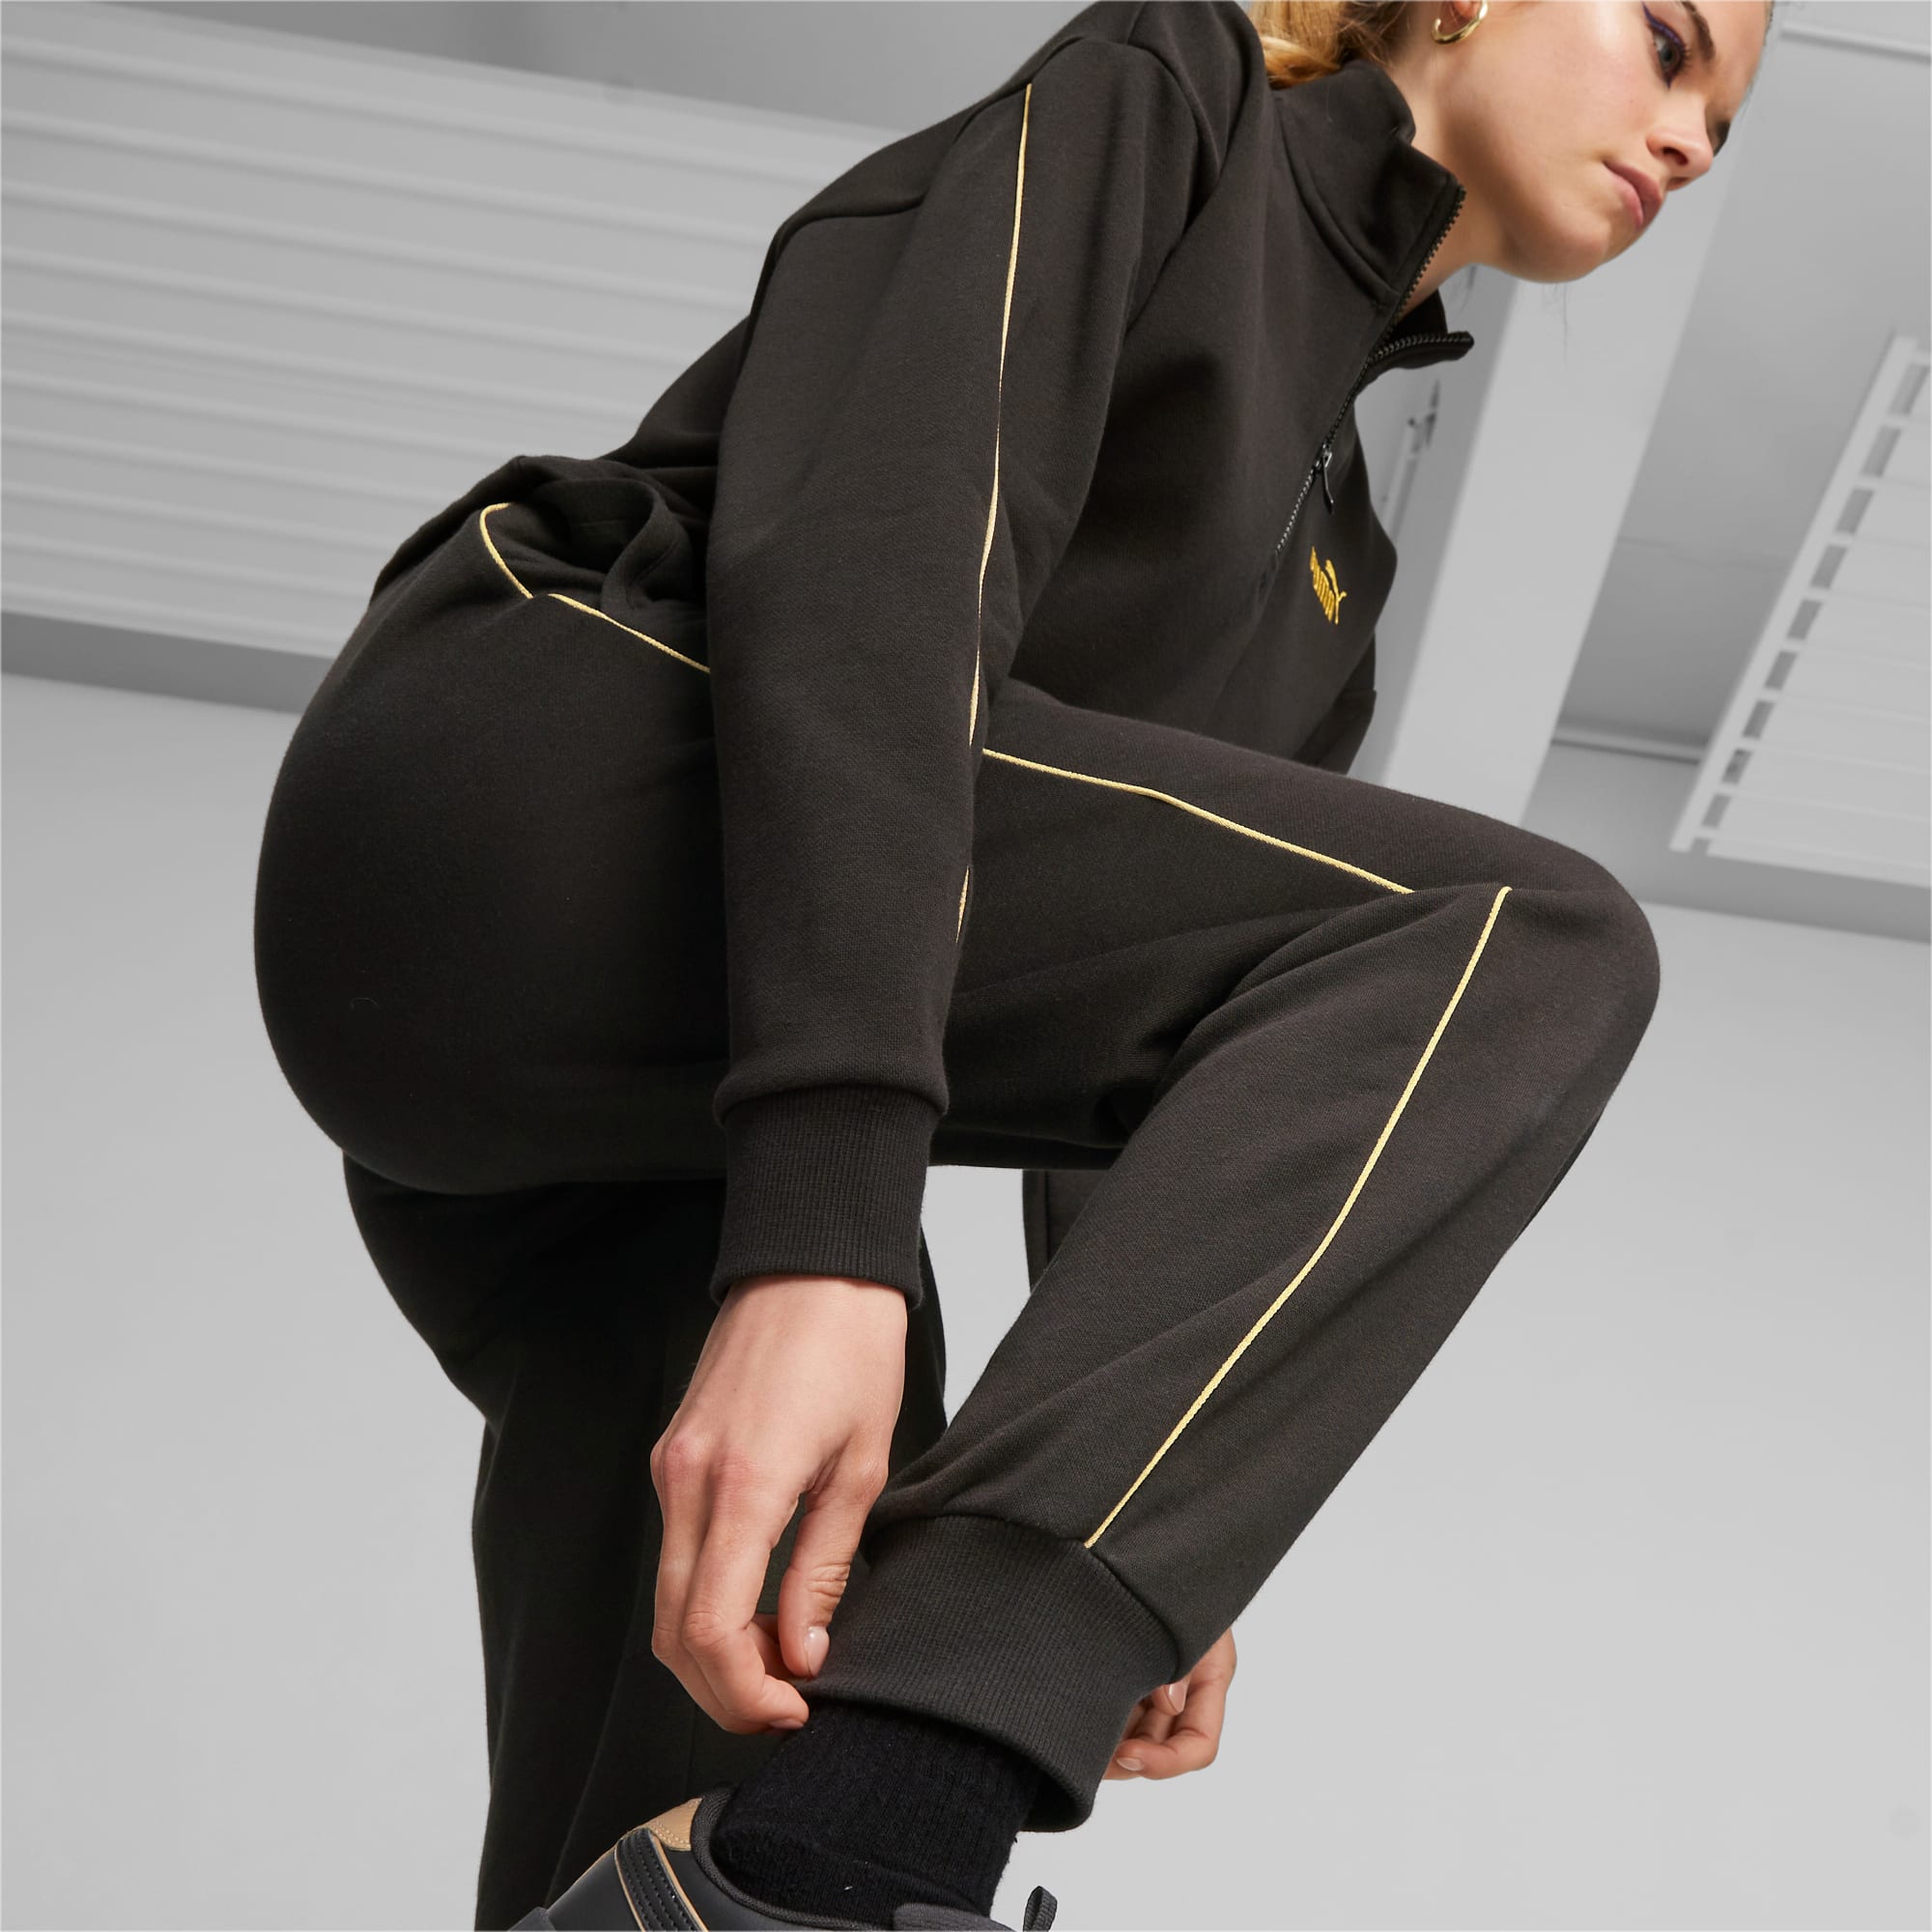 PUMA Ess+ Minimal Gold Women's Sweatpants, Black